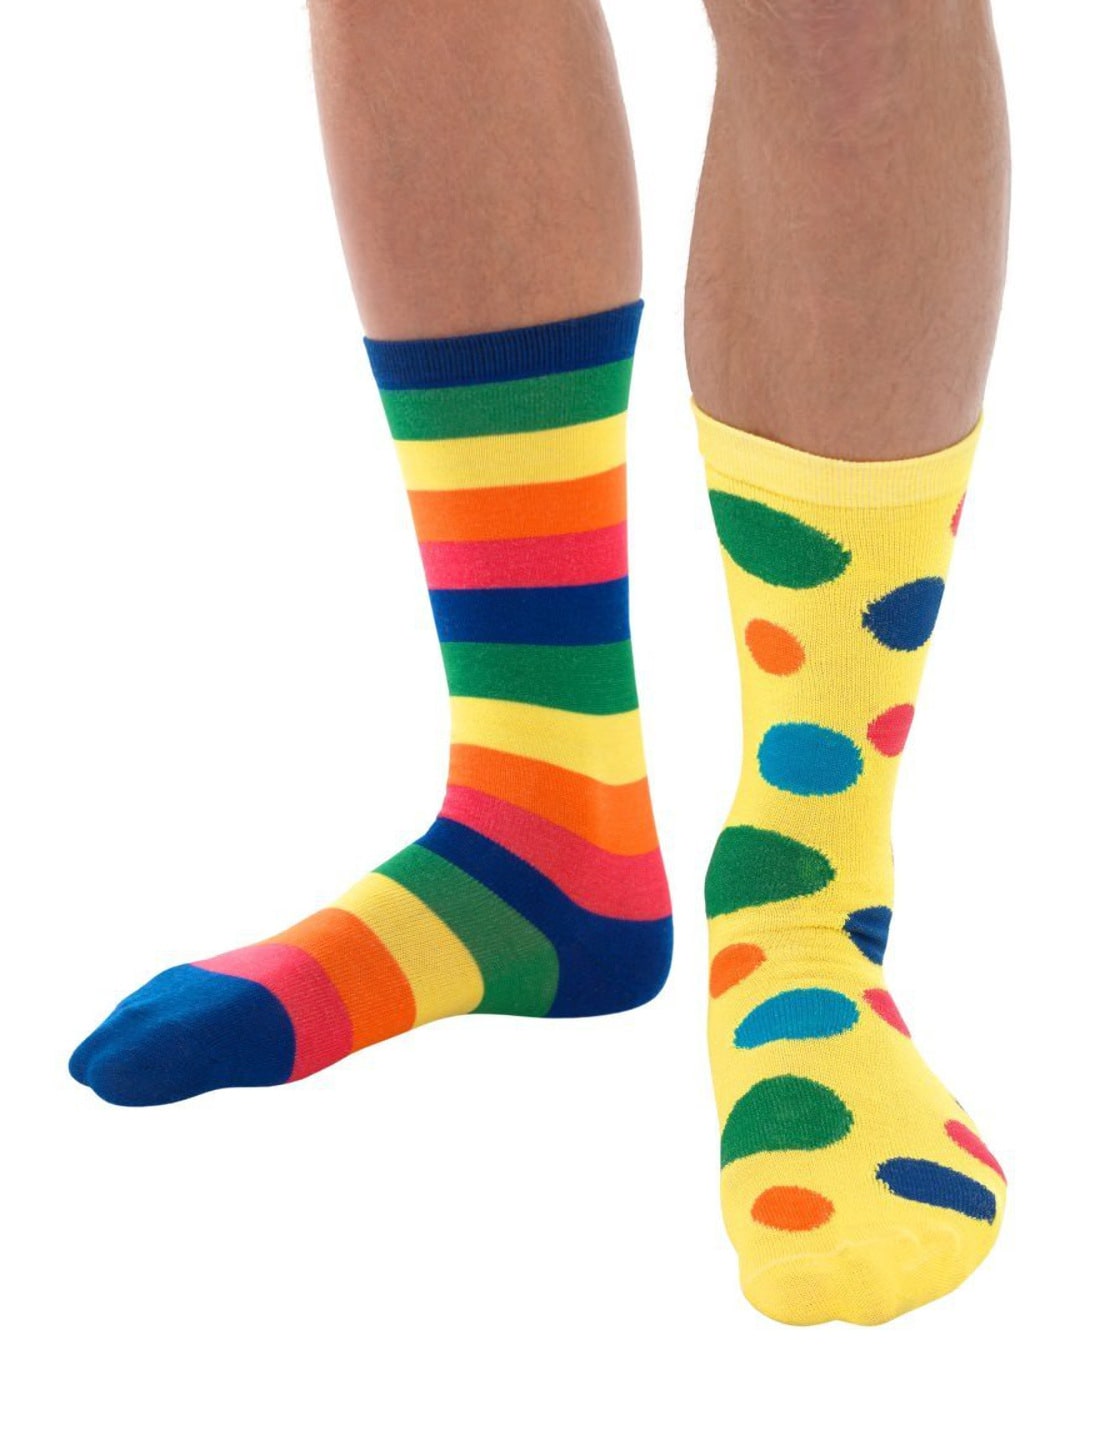 Socken bunt mit Streifen und Punkten